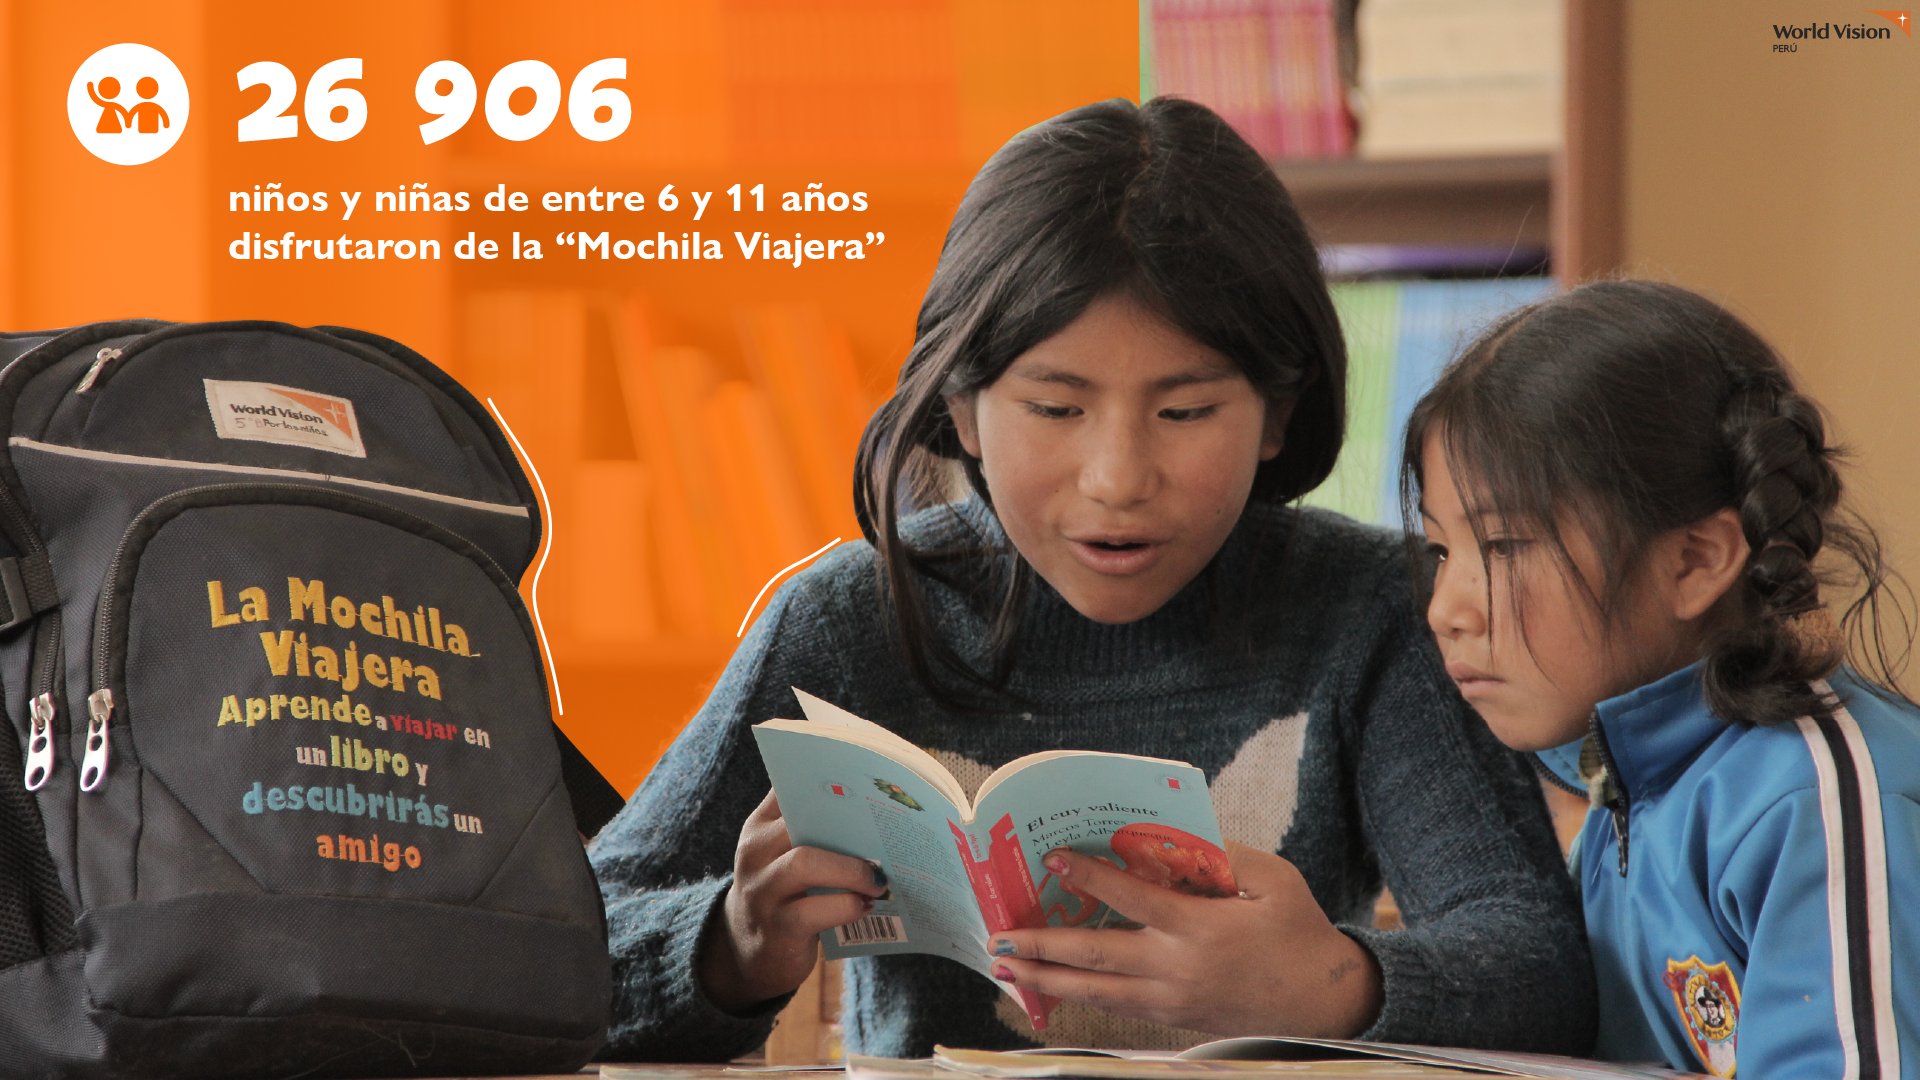 World Vision Perú on X: ¿Ya conoces la Mochila Viajera? Esta es parte de  nuestra estrategia para fomentar el hábito lector en los niños y niñas a  través del préstamo y movilización